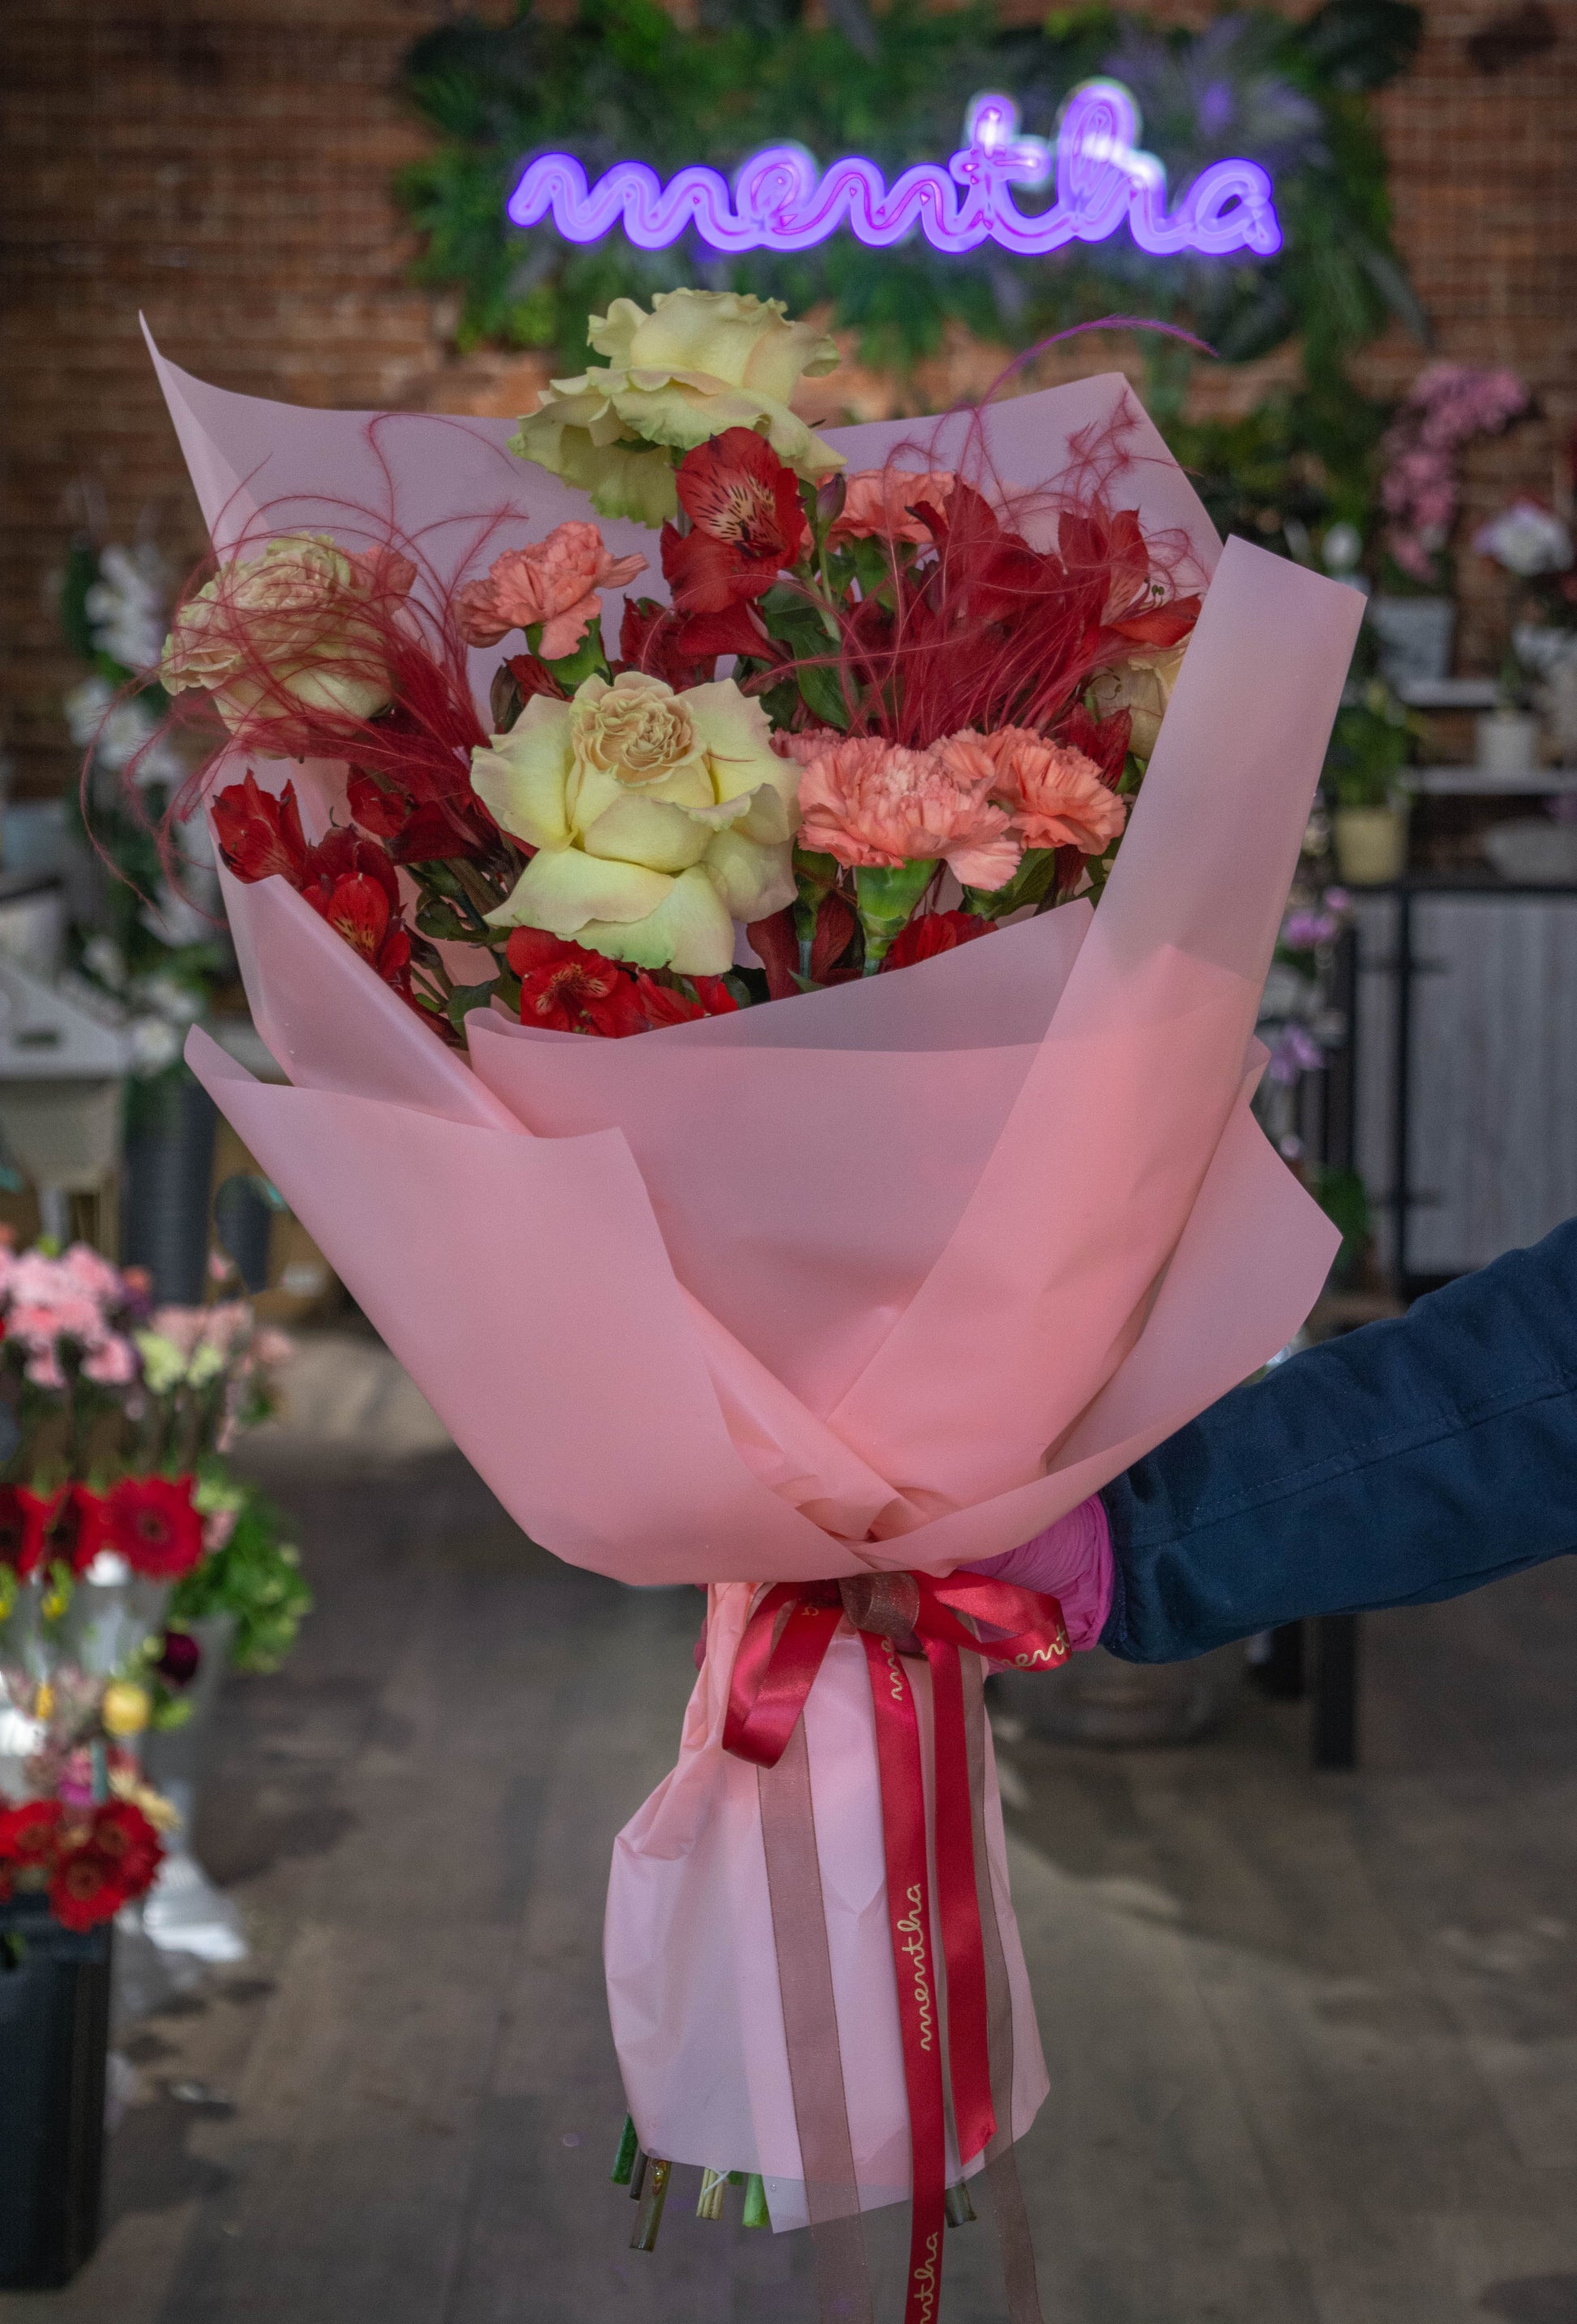 Comandă acum: Buchet flori roșii și pastelate cu livrare GRATUITĂ Trandafiri și flori pastelate cu livrare GRATUITĂ în Resita Alegeți buchetul nostru de flori roșii și pastelate cu livrare GRATUITĂ în Resita Buchet proaspăt în culori roșii și pastel cu livrare GRATUITĂ Livrare rapidă și GRATUITĂ pentru buchetul de flori roșii și pastelate în Resita